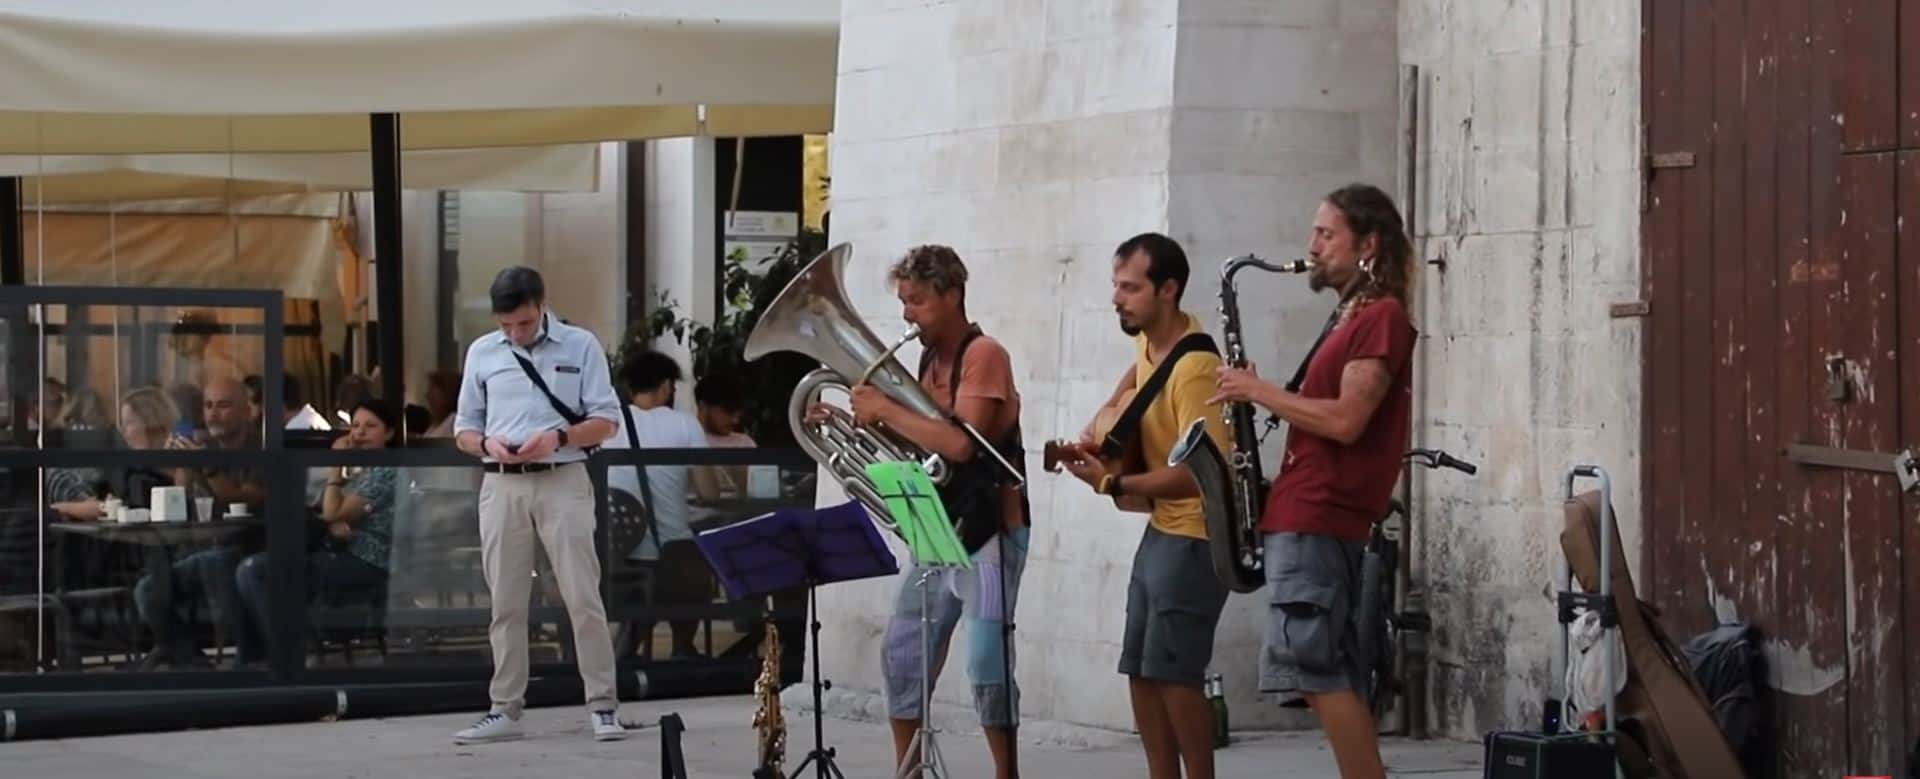 A street band playing at Bari's streets, Italy